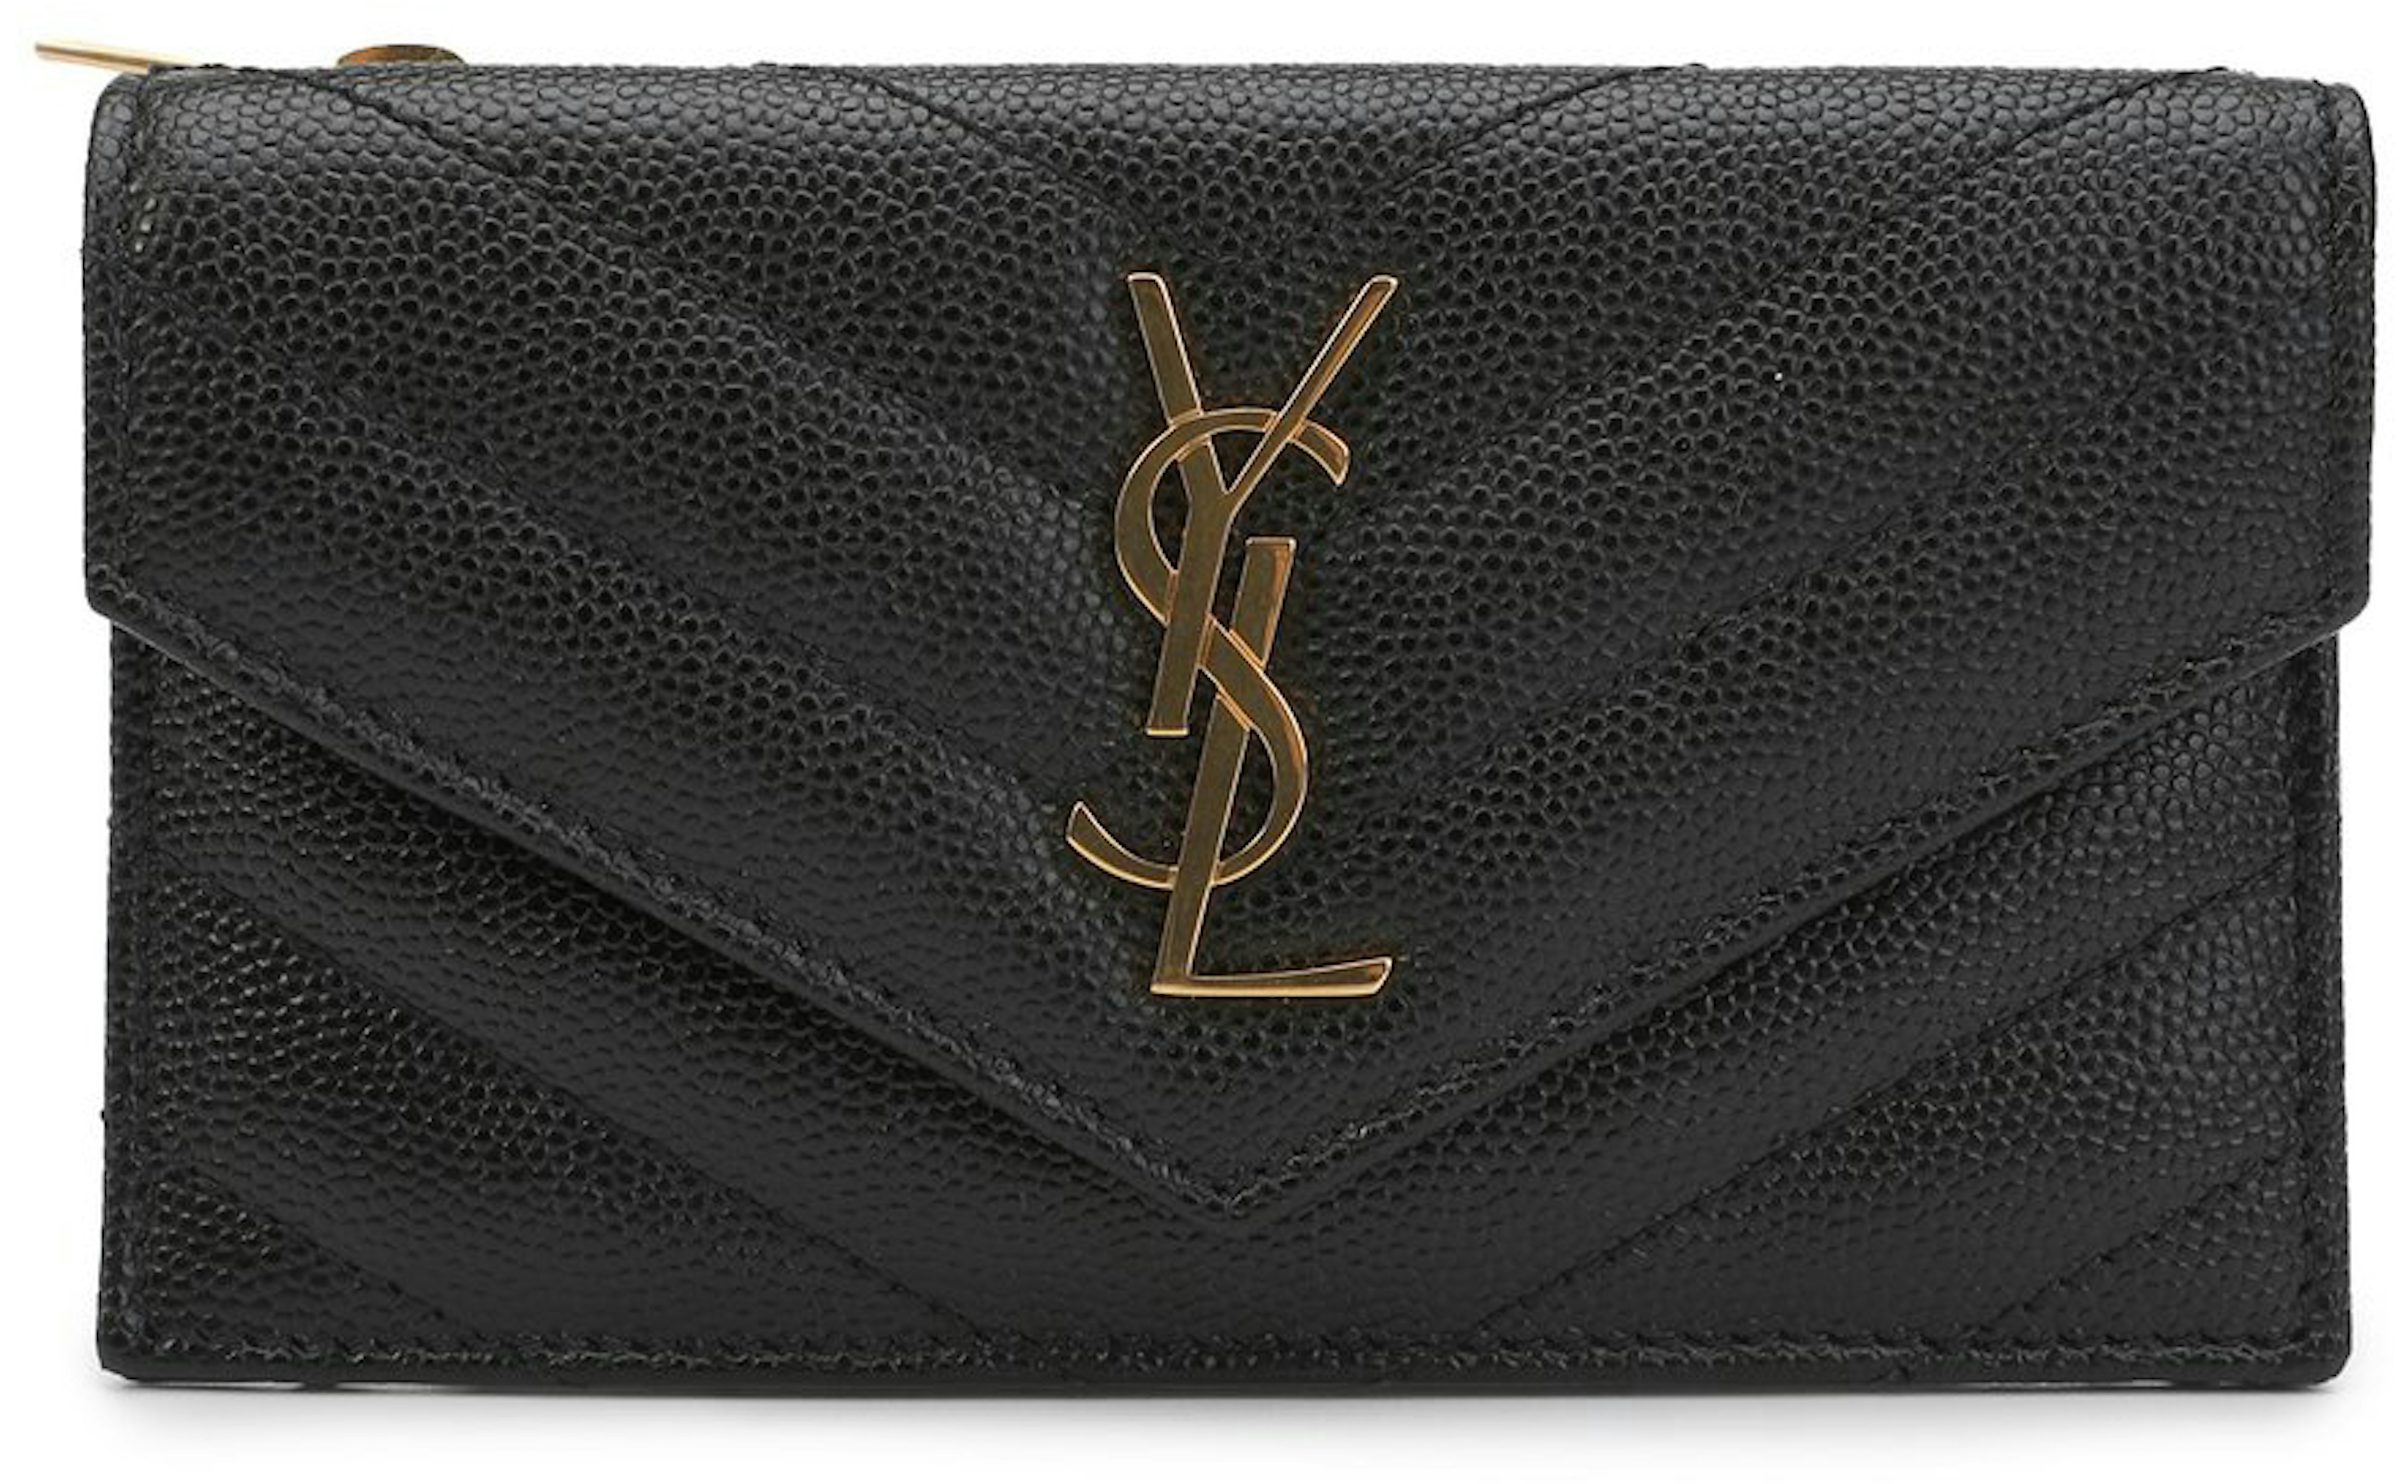 Saint Laurent YSL Patent Leather Compact Wallet